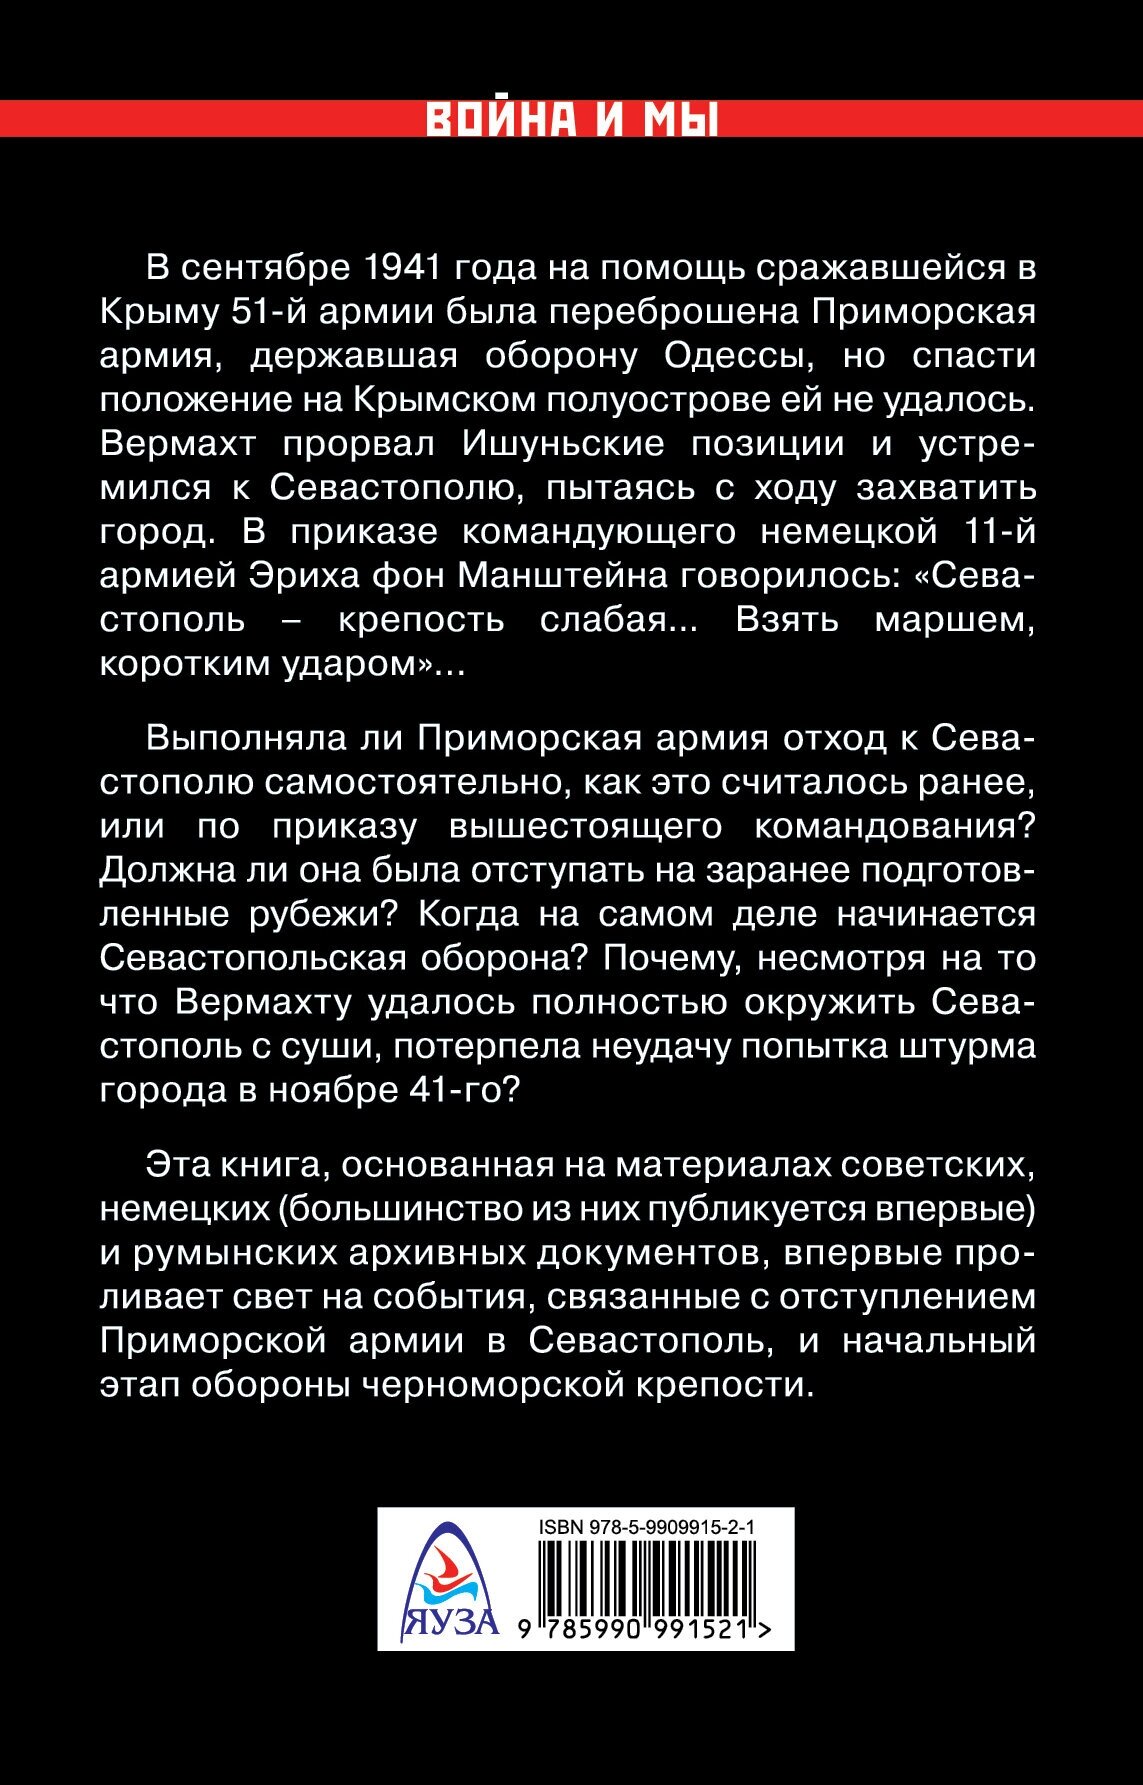 Первый штурм Севастополя. Ноябрь 41-го - фото №7